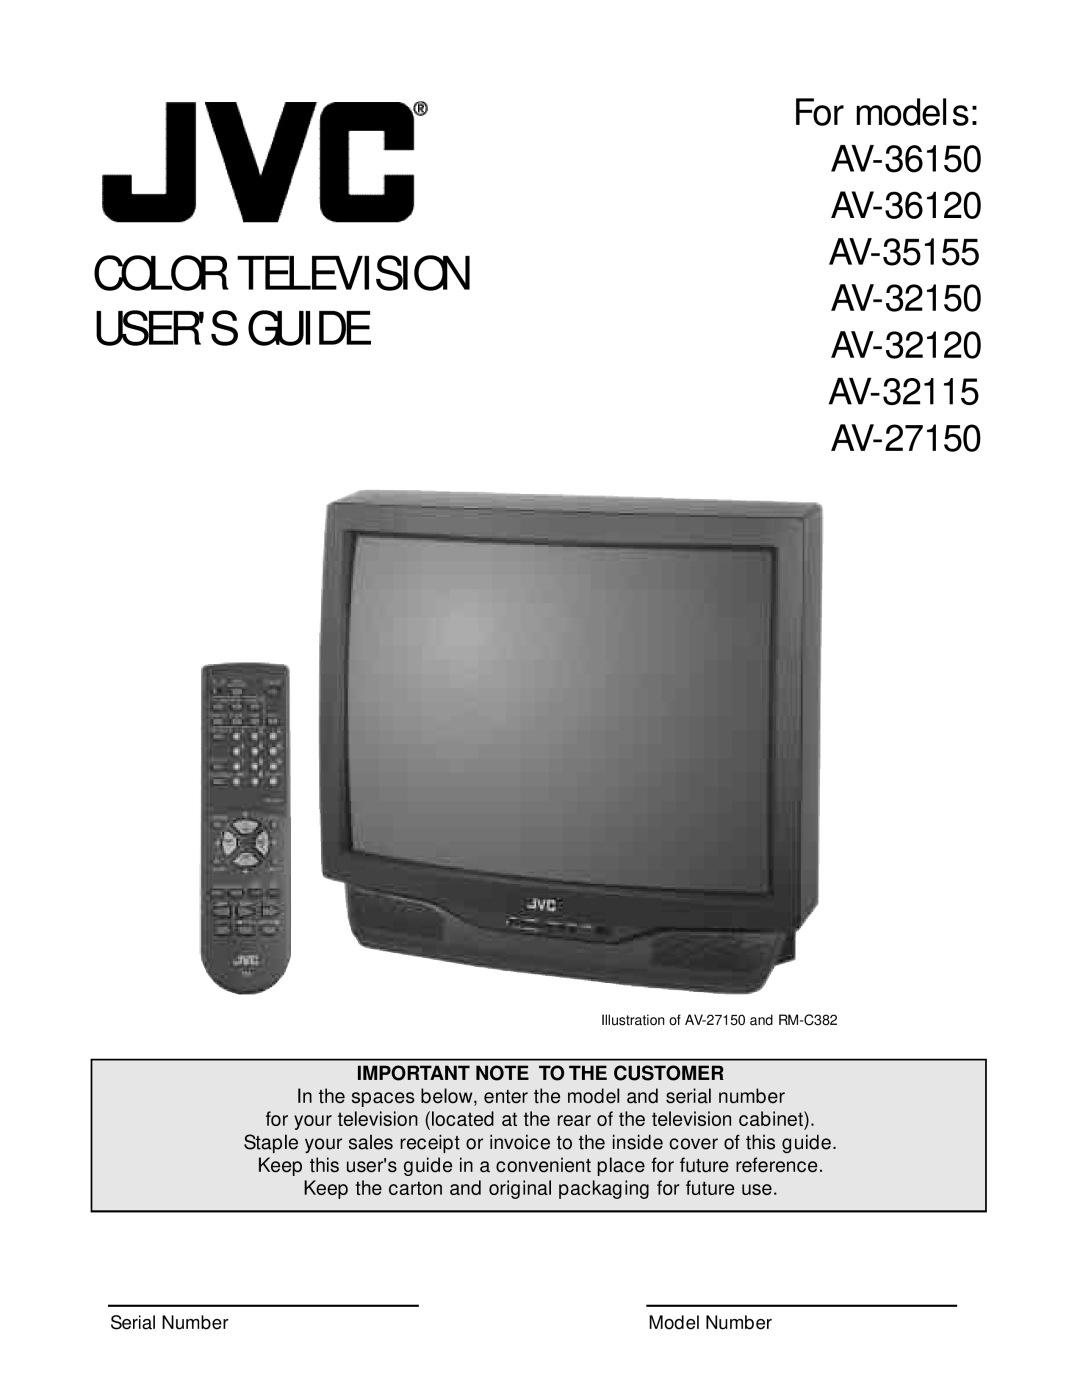 JVC AV 36150, AV 36120, AV 32120, AV 32150, AV 27150 manual Color Television Users Guide, Important Note To The Customer 